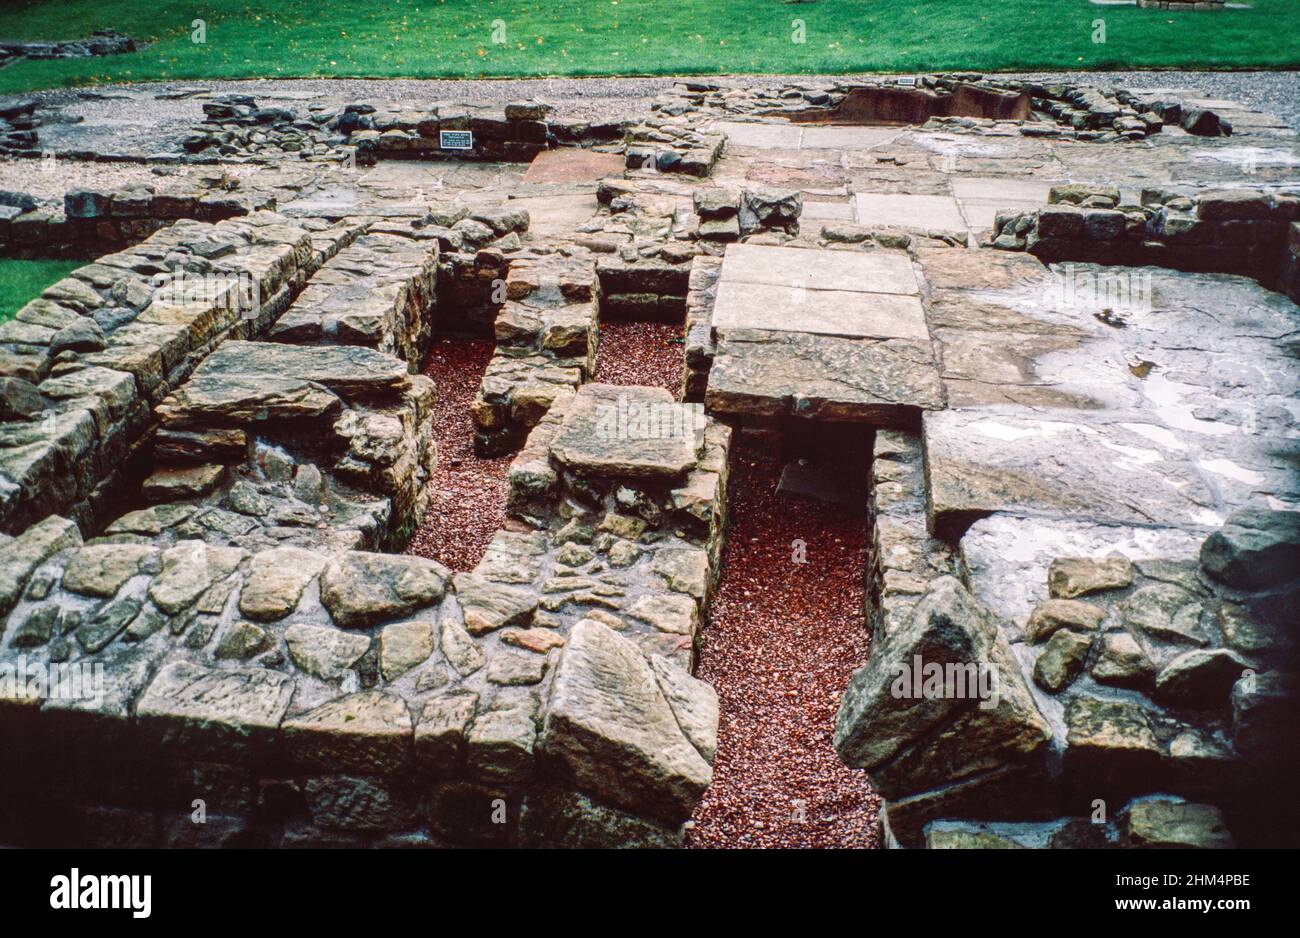 Bath bleibt in Bearsden, Schottland. Die Antonine-Mauer (Vallum Antonini), die von den Römern über den heutigen Zentralgürtel Schottlands zwischen dem Firth of Forth und dem Firth of Clyde erbaut wurde, etwa 100km nördlich von der Hadrianmauer. Archivscan von einem Dia. September 1992. Stockfoto